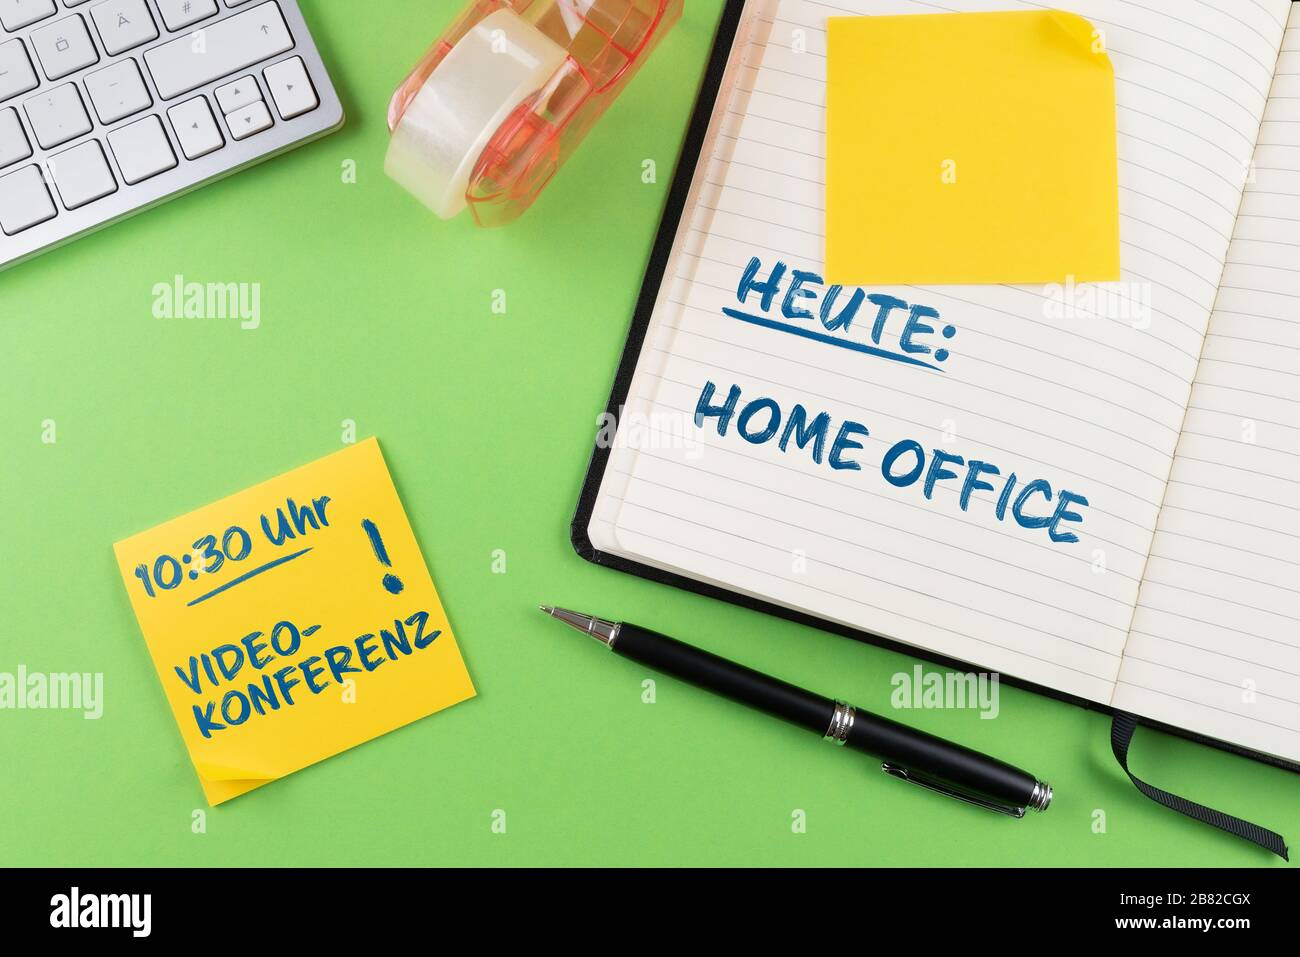 Concepto de trabajo desde casa y oficina doméstica, portátil y bloc de notas en el escritorio con recordatorio de videoconferencia en alemán Foto de stock